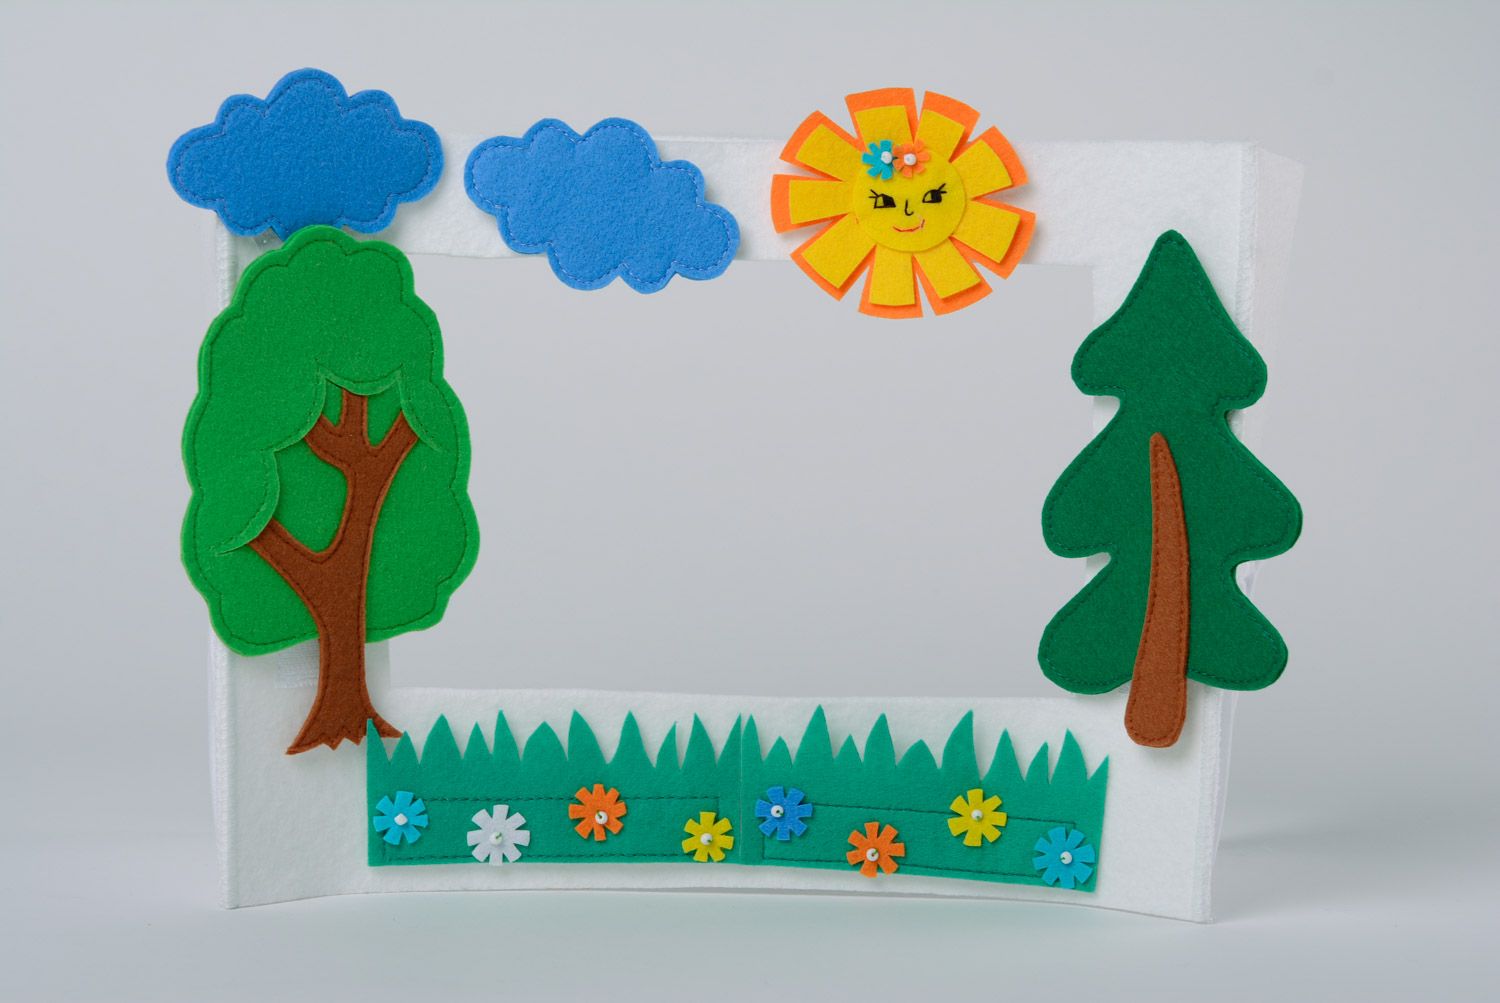 Tabique de papel y decoraciones para teatro de títeres infantil hecho a mano foto 2